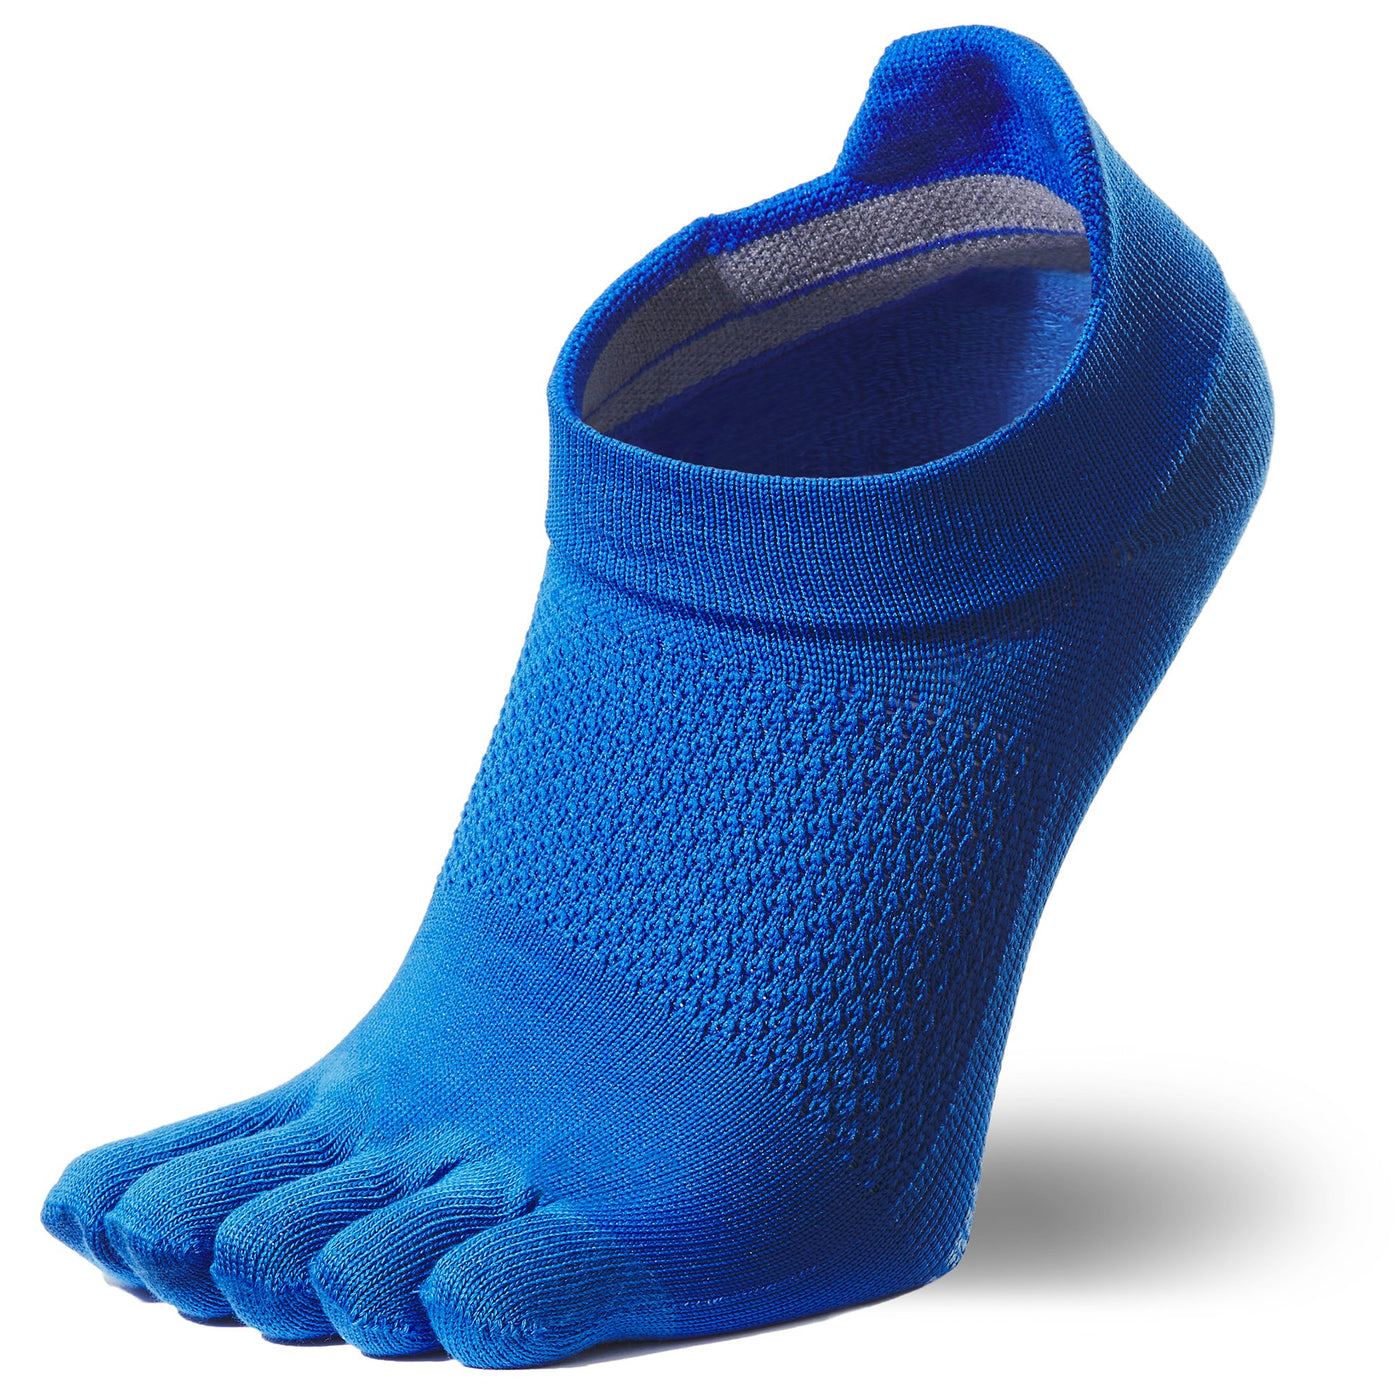 5-toe Arch Support Short Socks